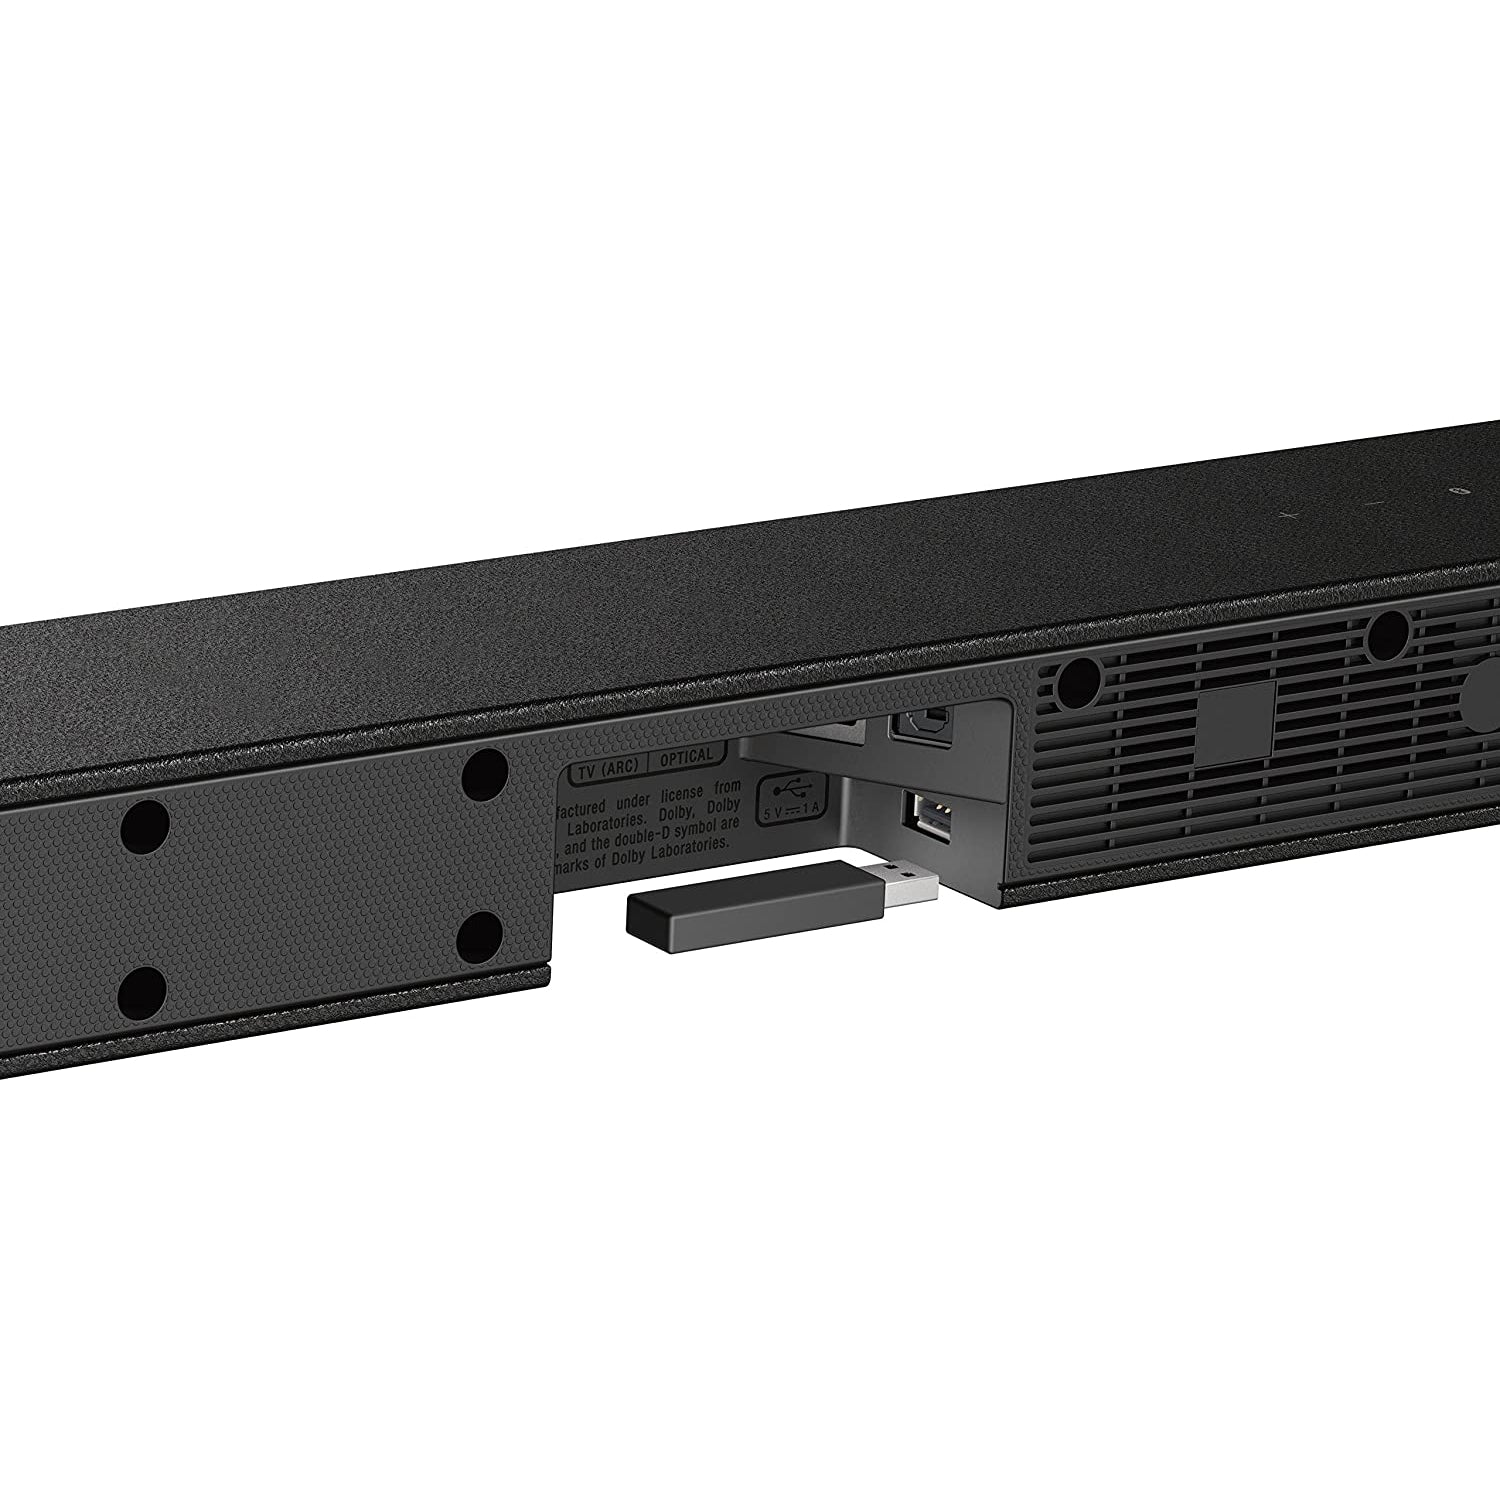 Sony HT-CT290 Ultra-Slim 300W Sound Bar